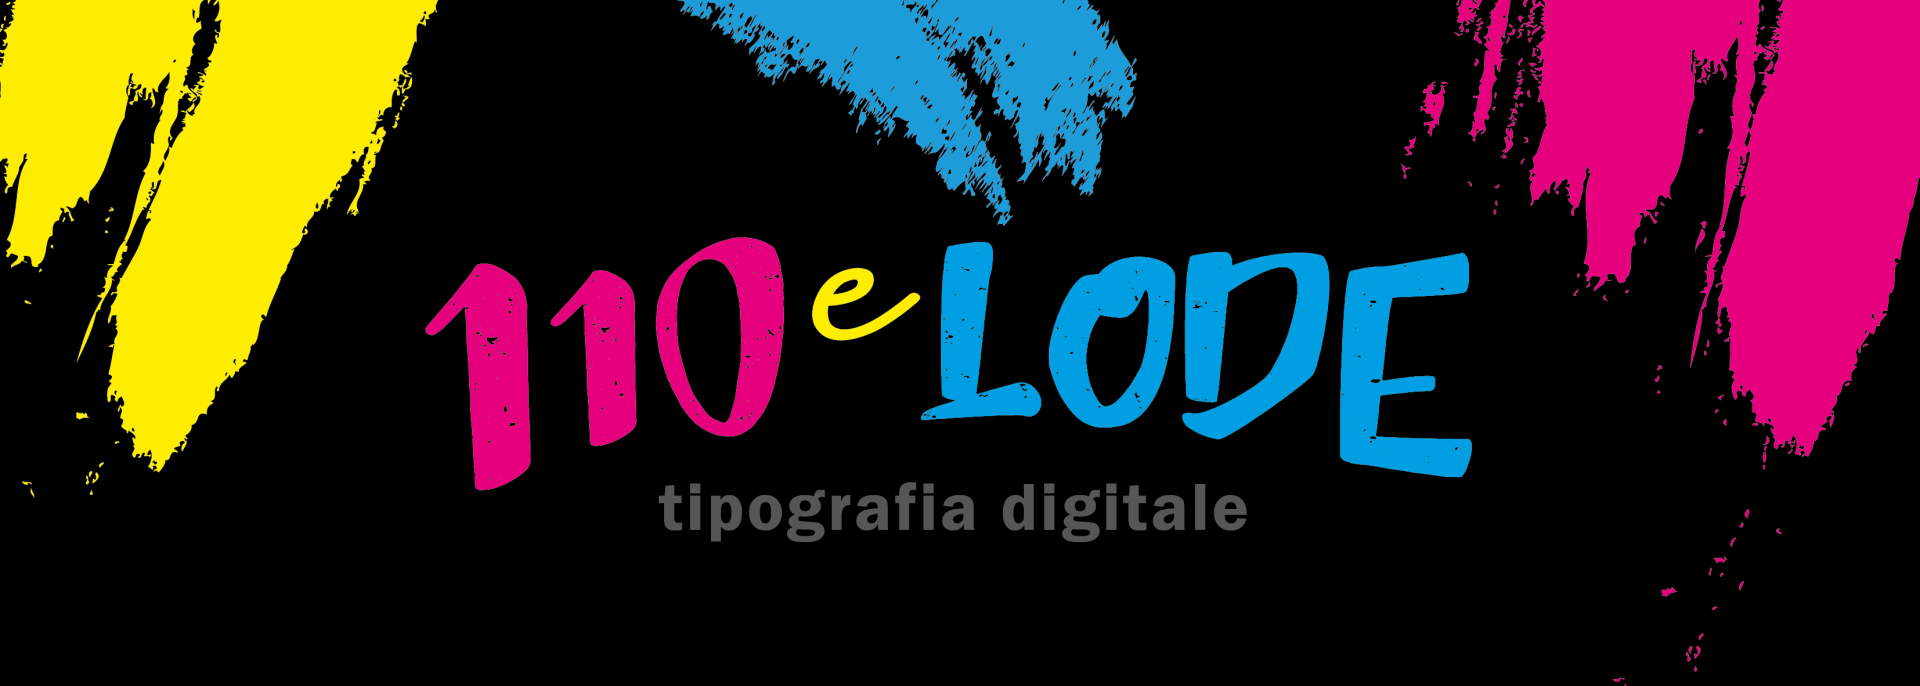 Tipografia Digitale 110 e Lode - LOGO